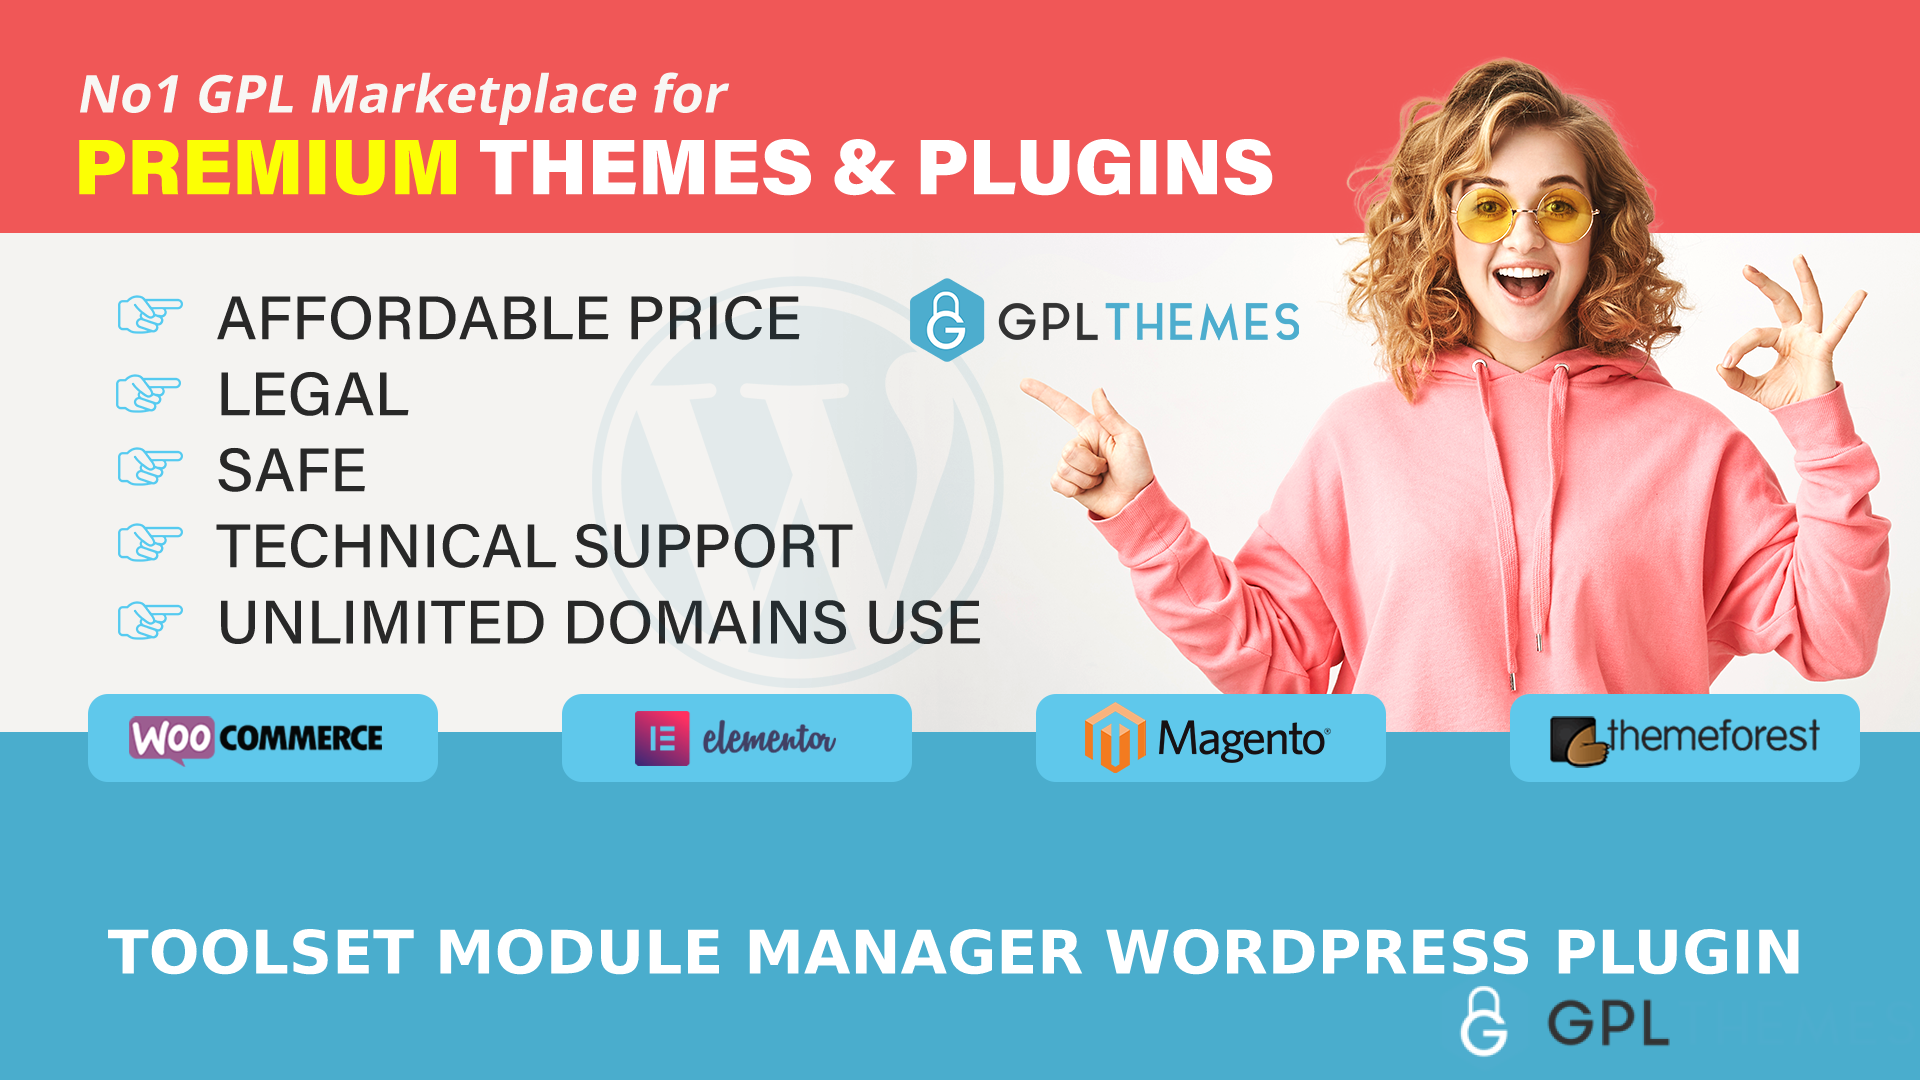 Toolset Module Manager WordPress Plugin